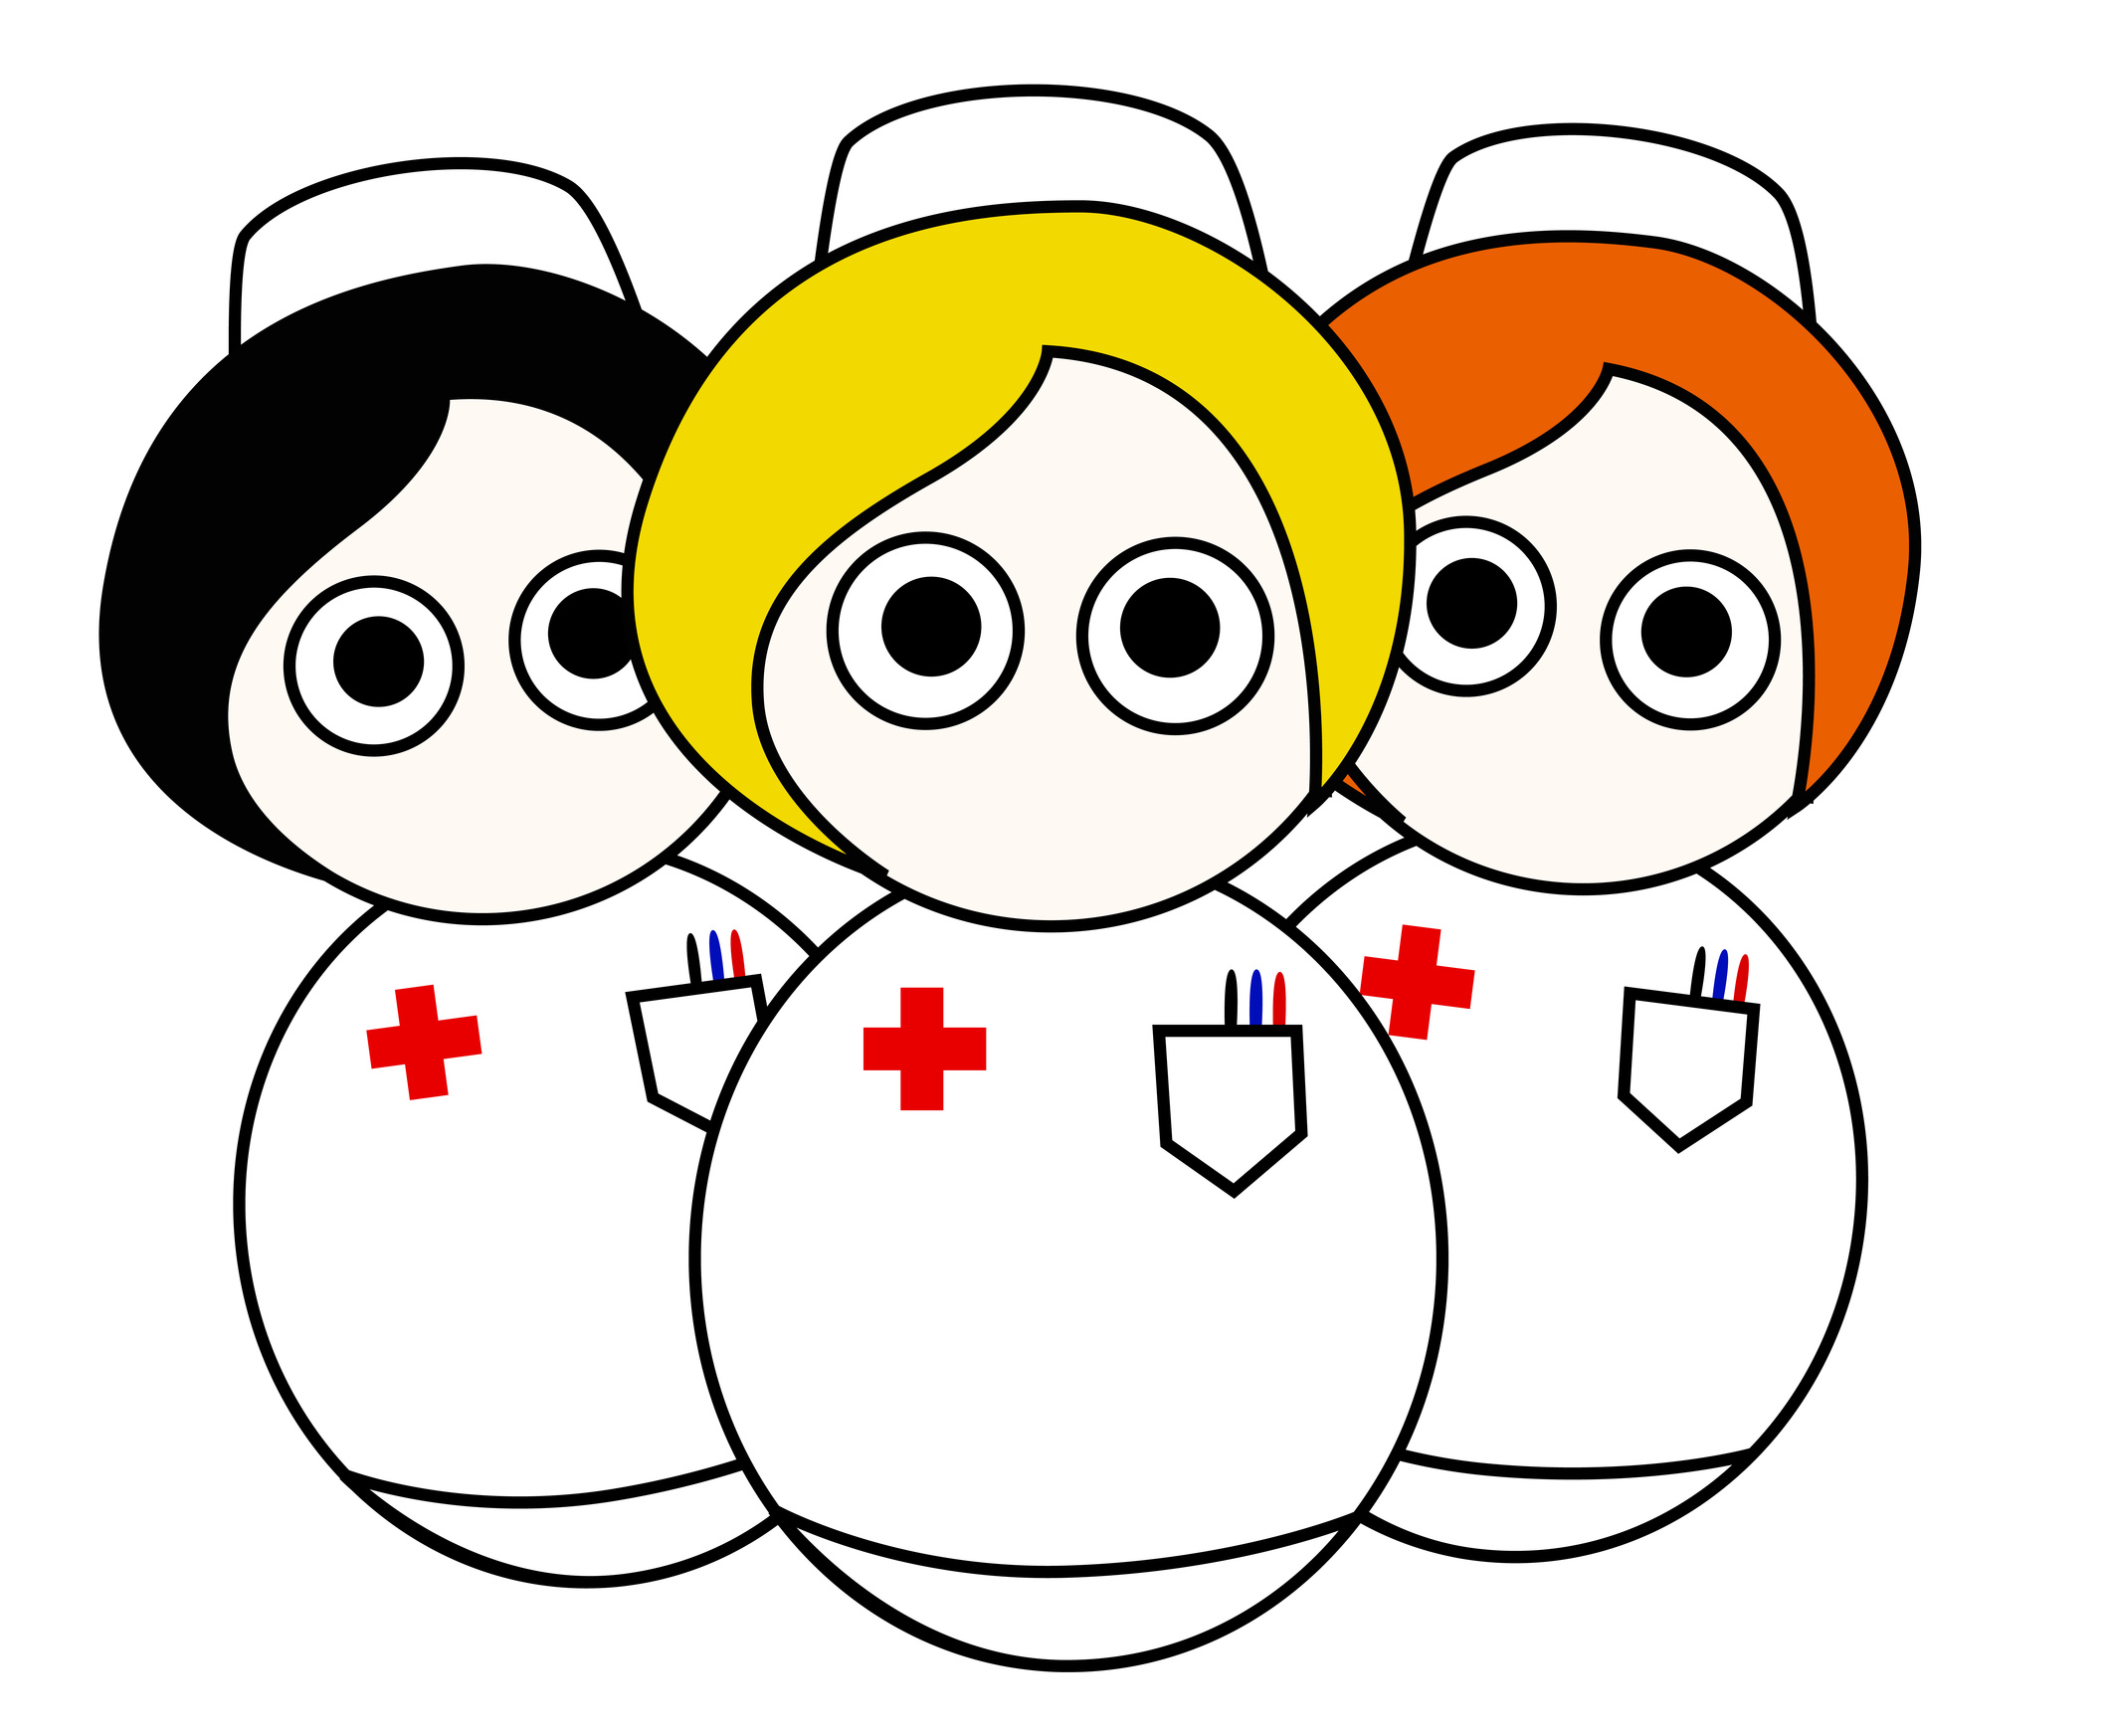 Cartoon Images Of Nurses